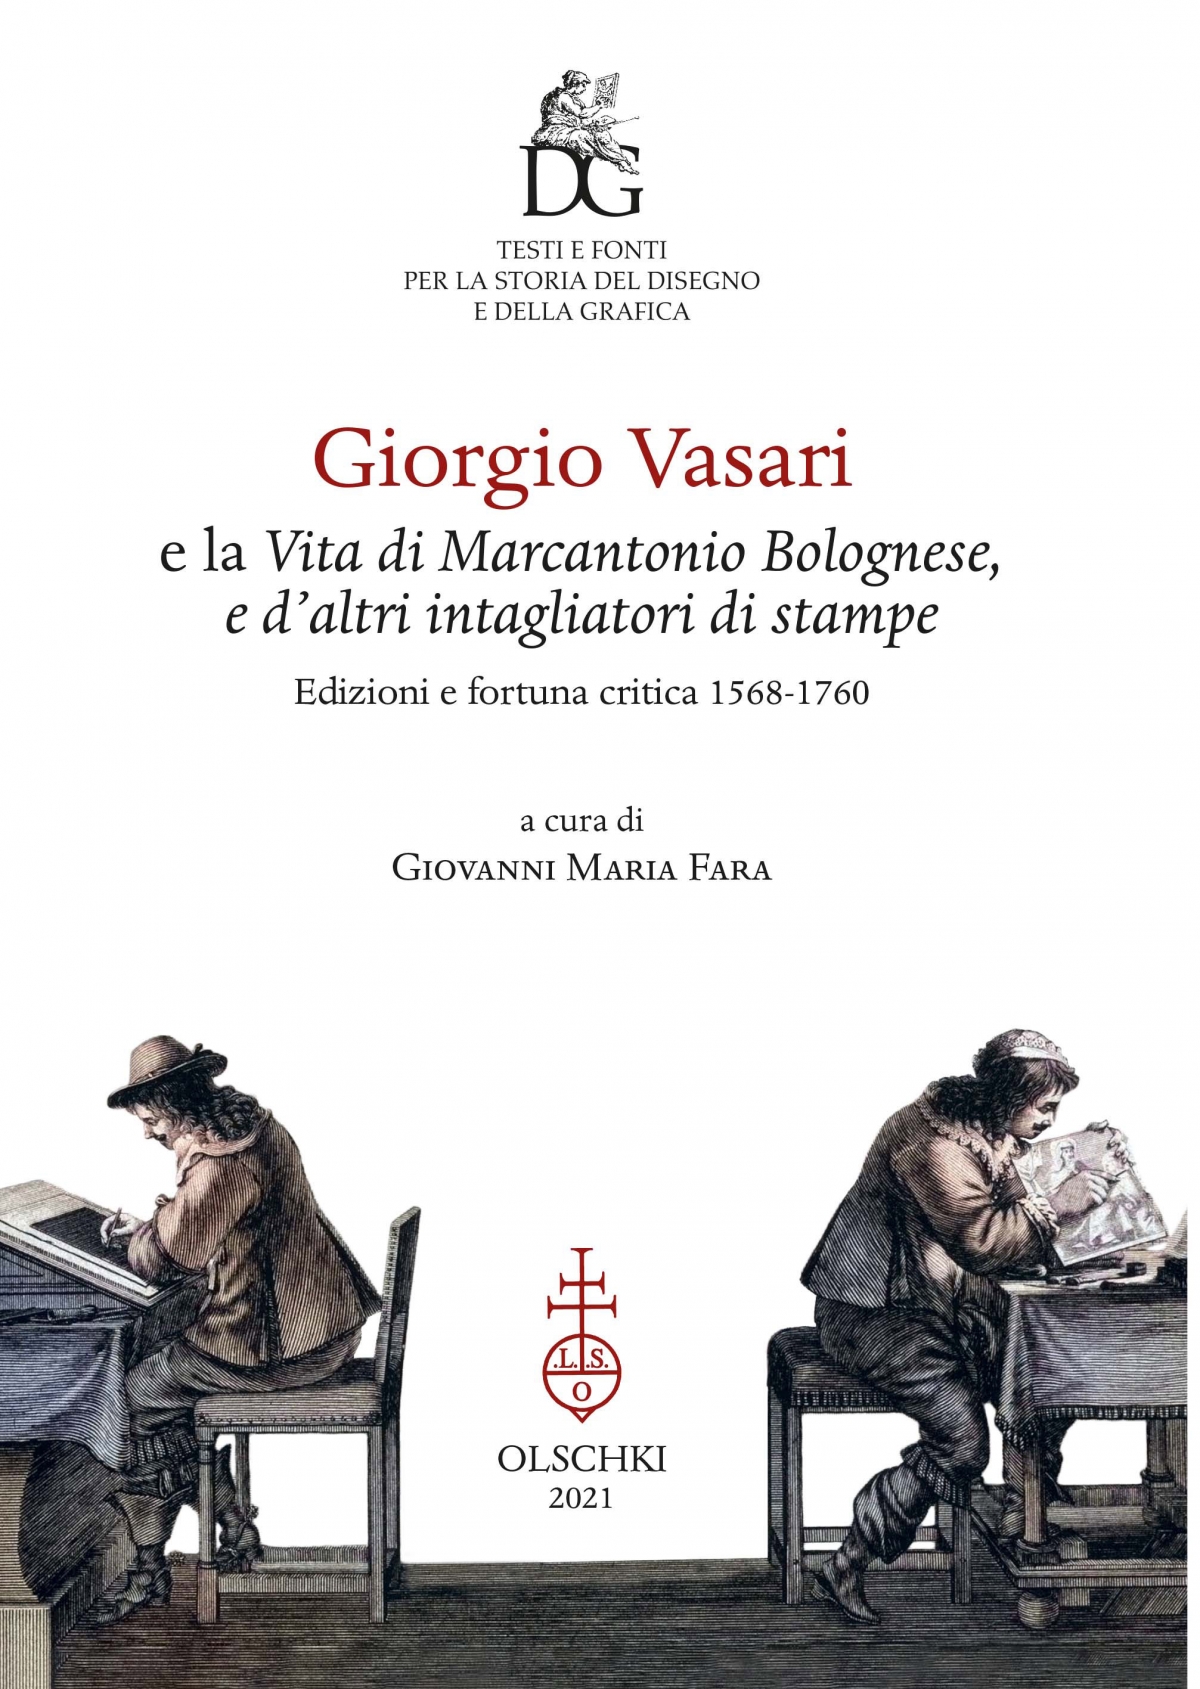 Giorgio Vasari e la Vita di Marcantonio Bolognese e d’altri intagliatori di stampe